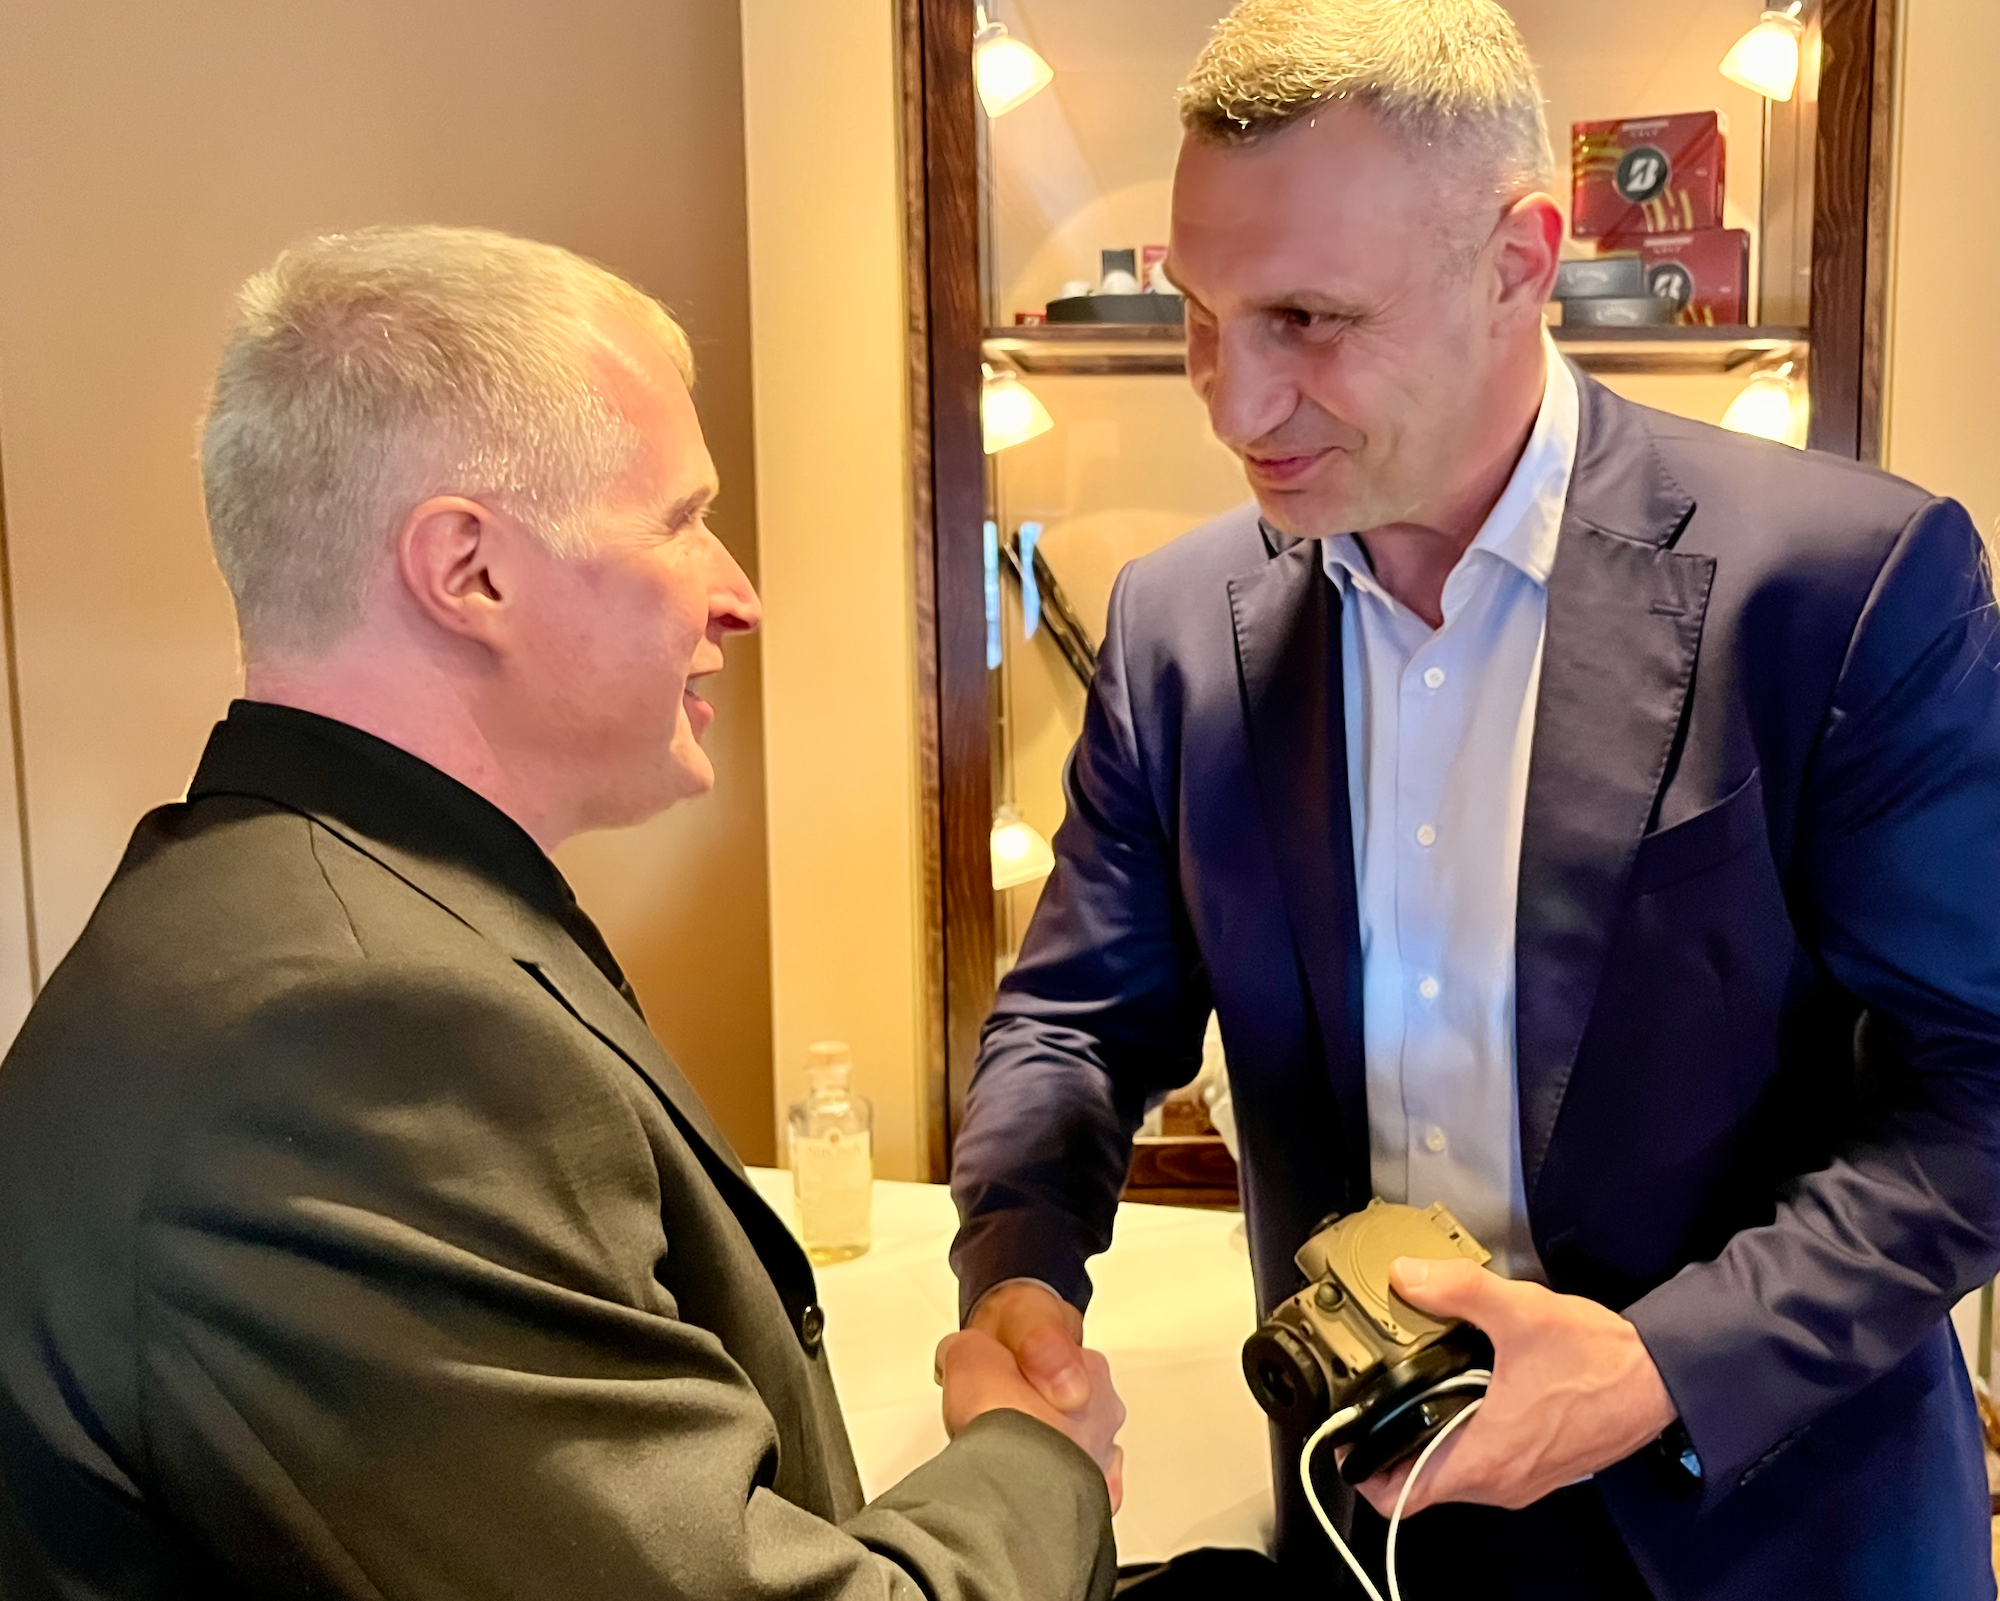 Bürgermeister Vitali Klitschko (r.) und Dr. Björn Andres treffen sich zur Übergabe weirterer Wärmebildgeräte.